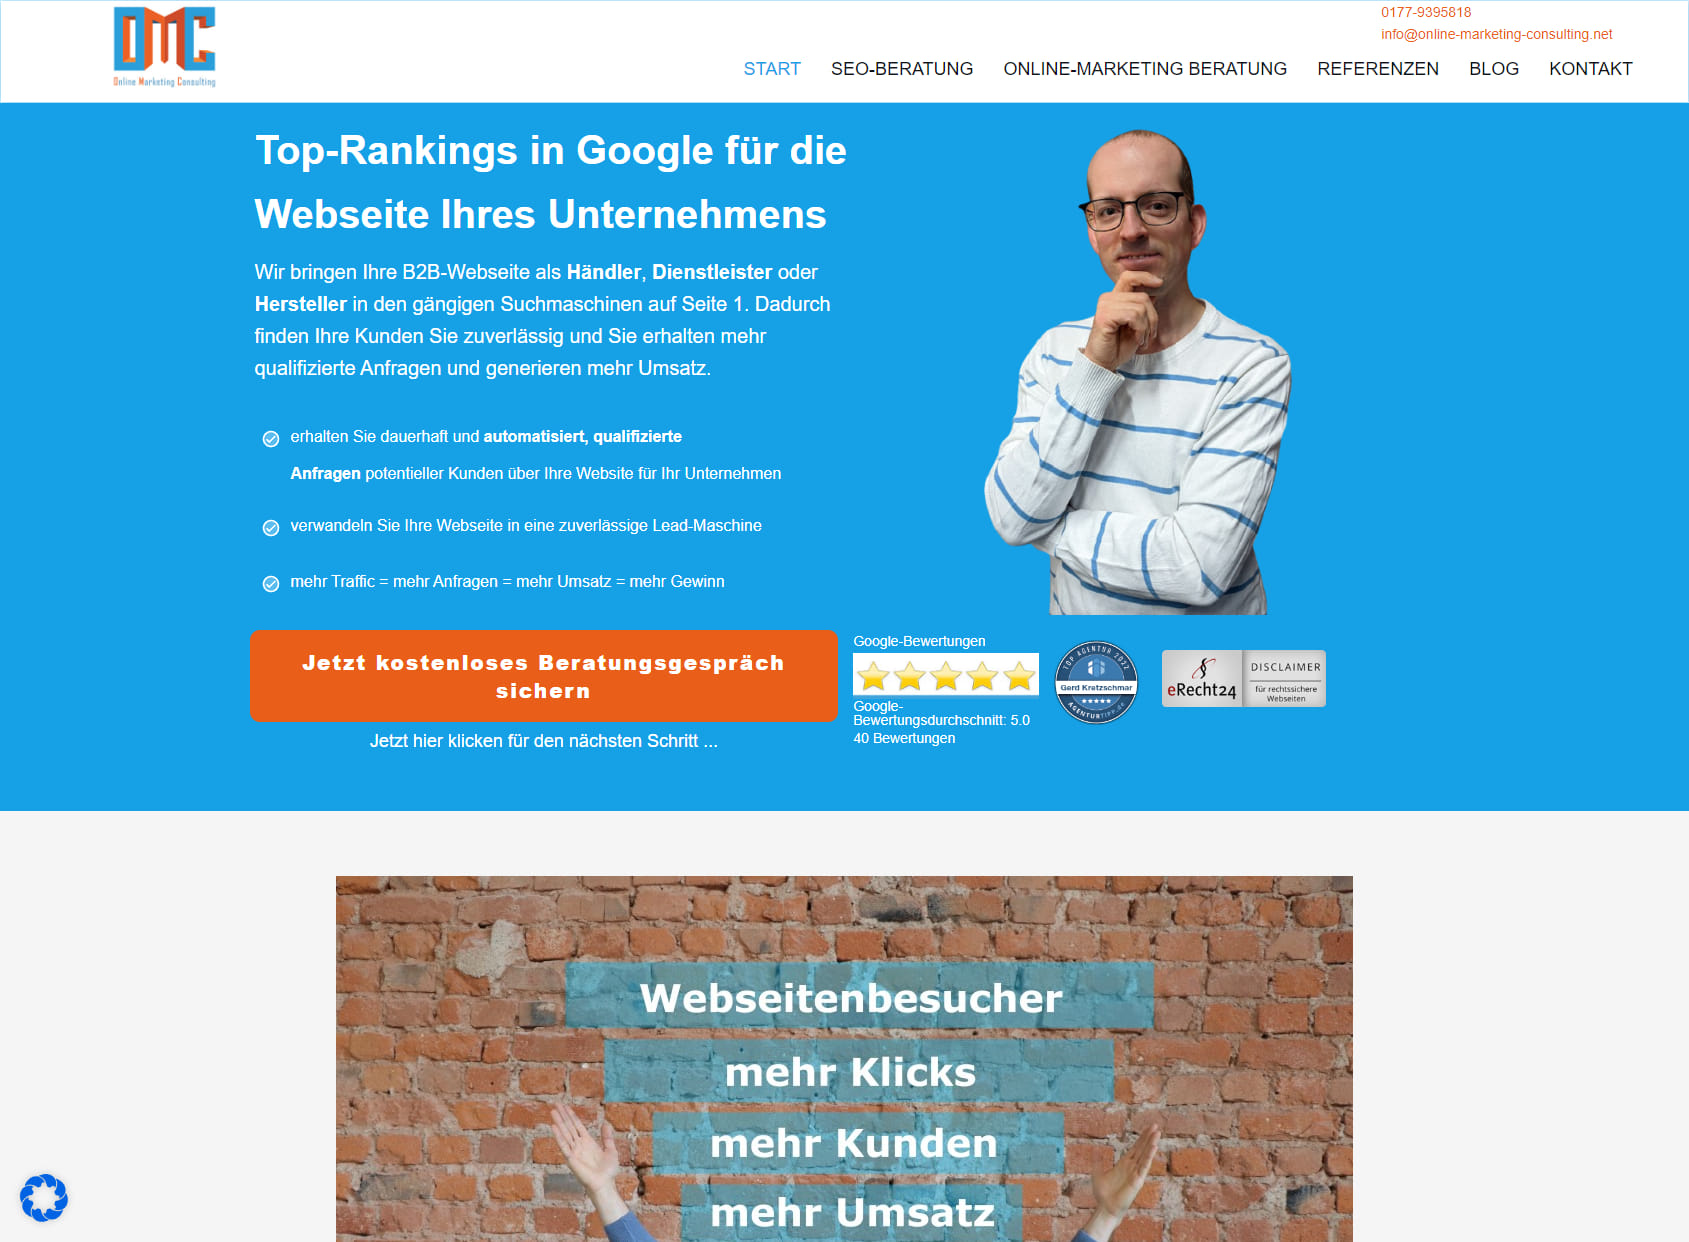 Online Marketing Consulting - SEO Chemnitz & Online-Marketing Chemnitz